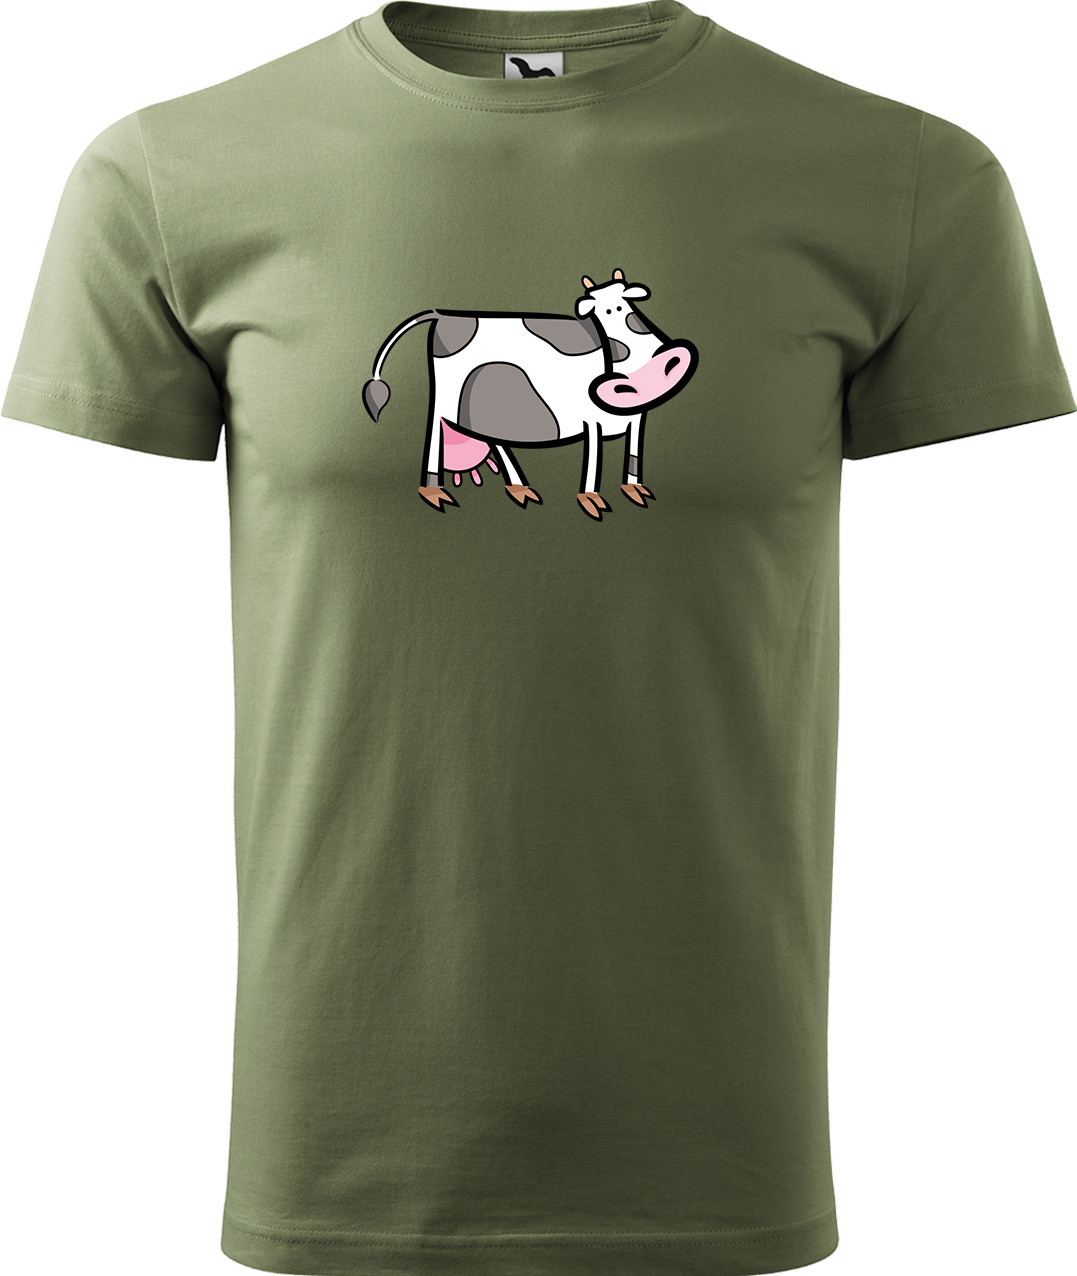 Pánské tričko s krávou - Kravička Velikost: XL, Barva: Světlá khaki (28), Střih: pánský